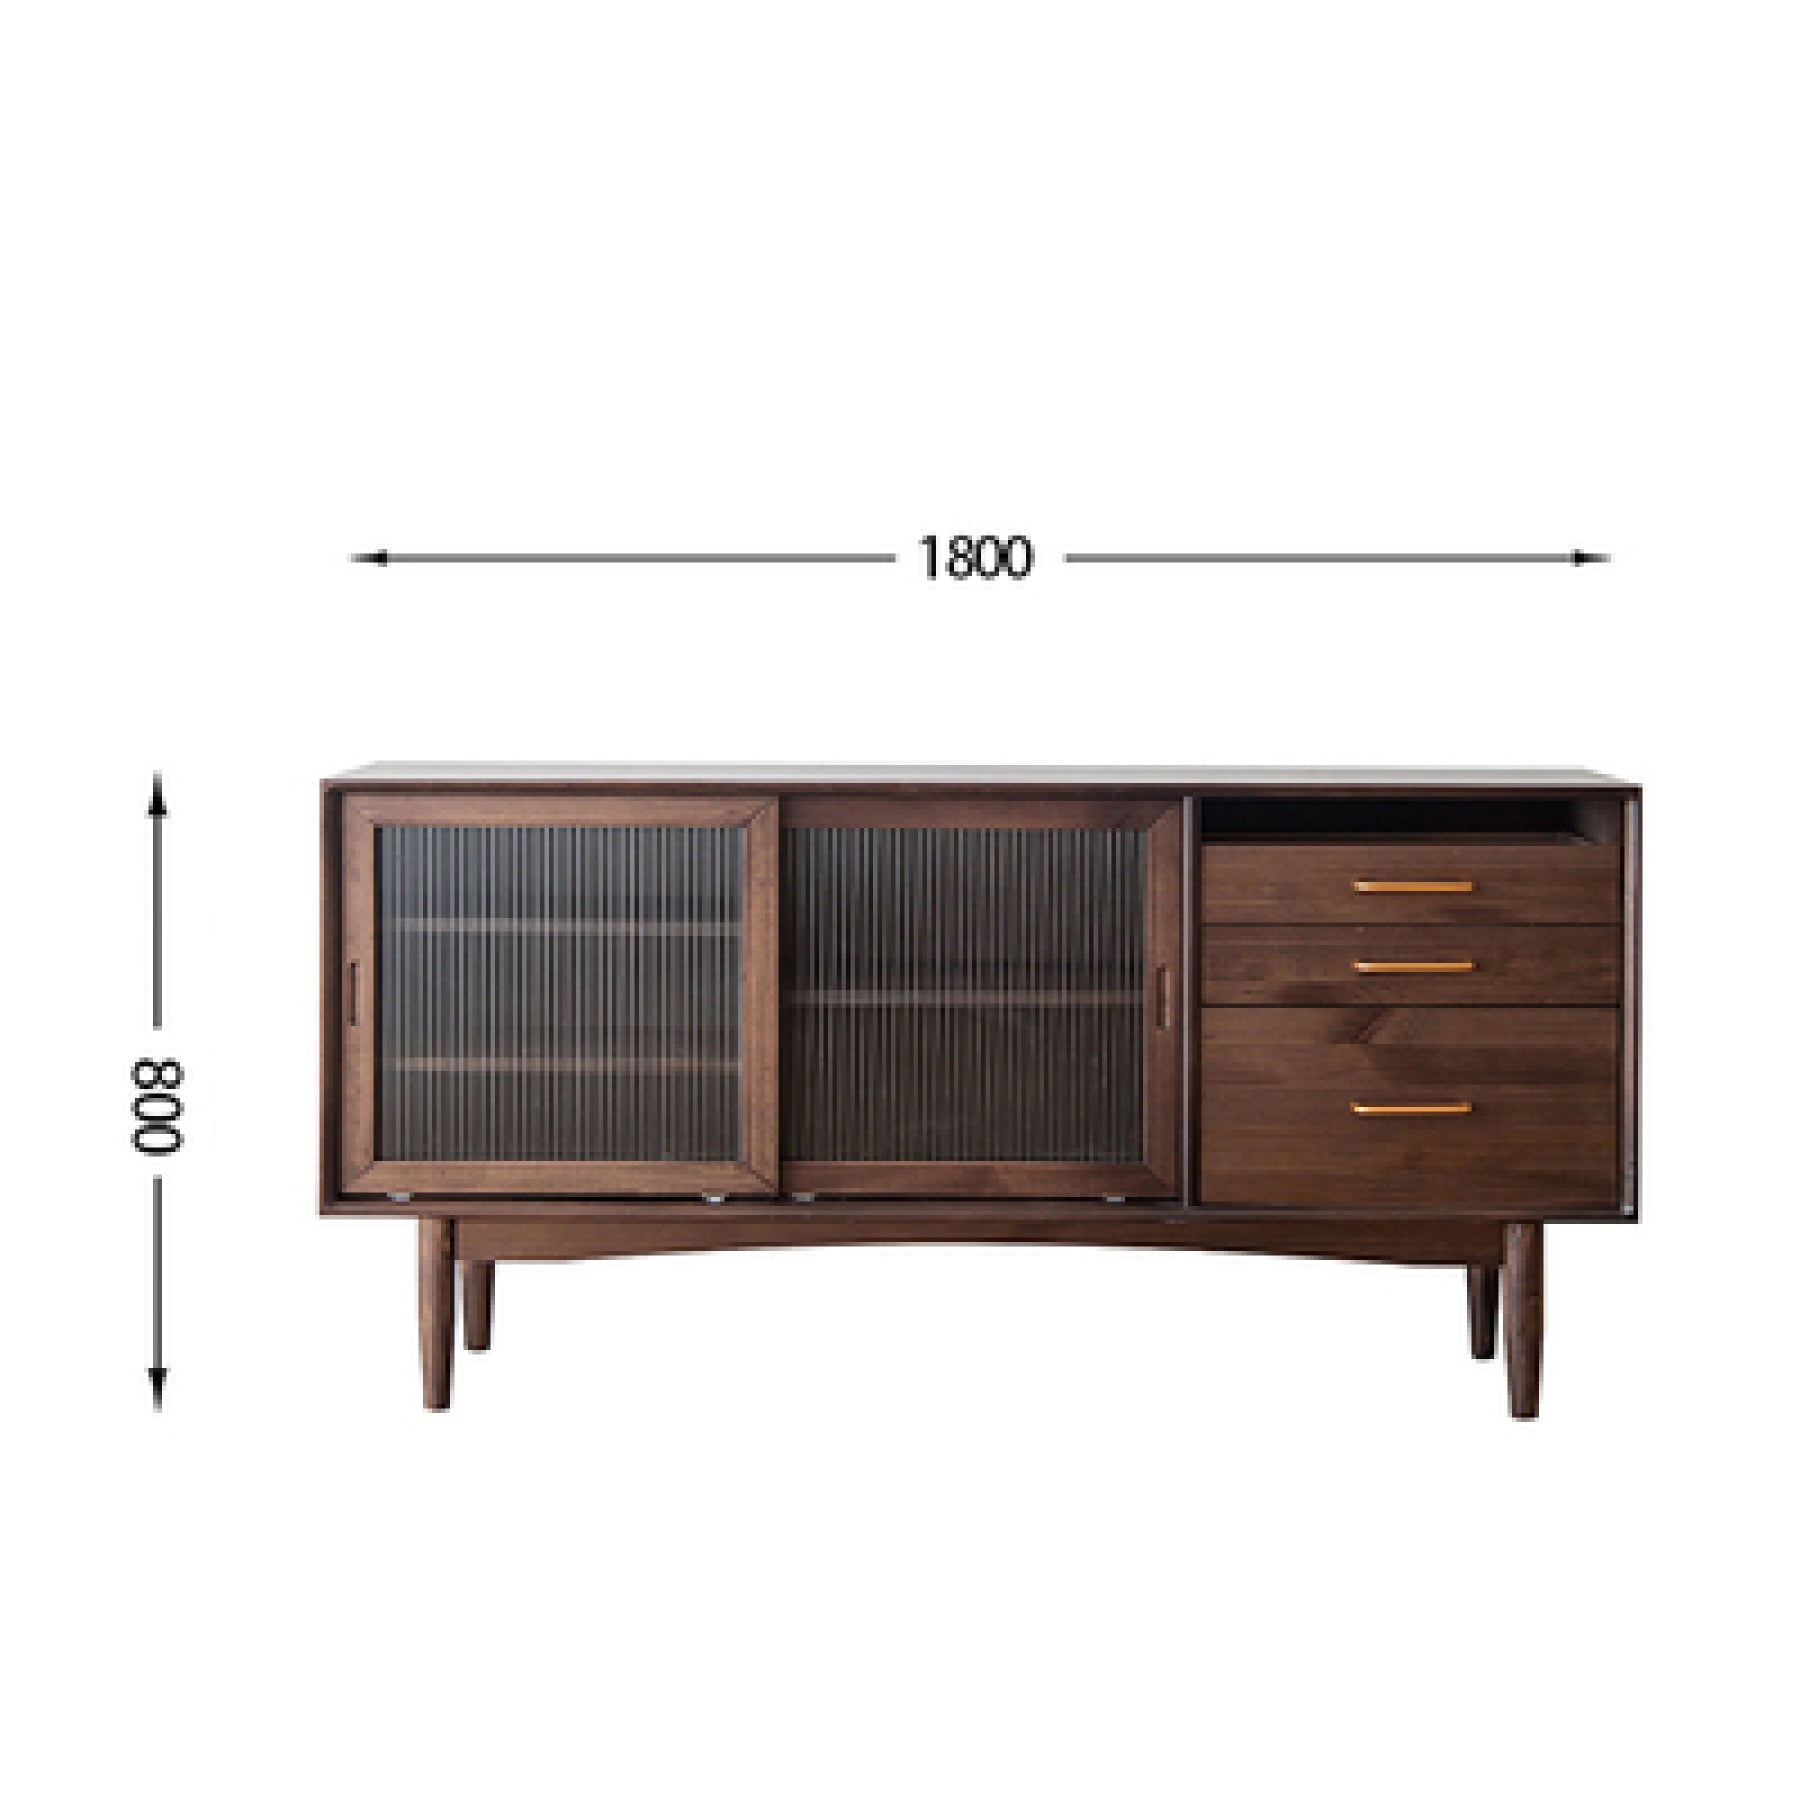 Tom Pine Wood Kitchen Storage Cabinet I